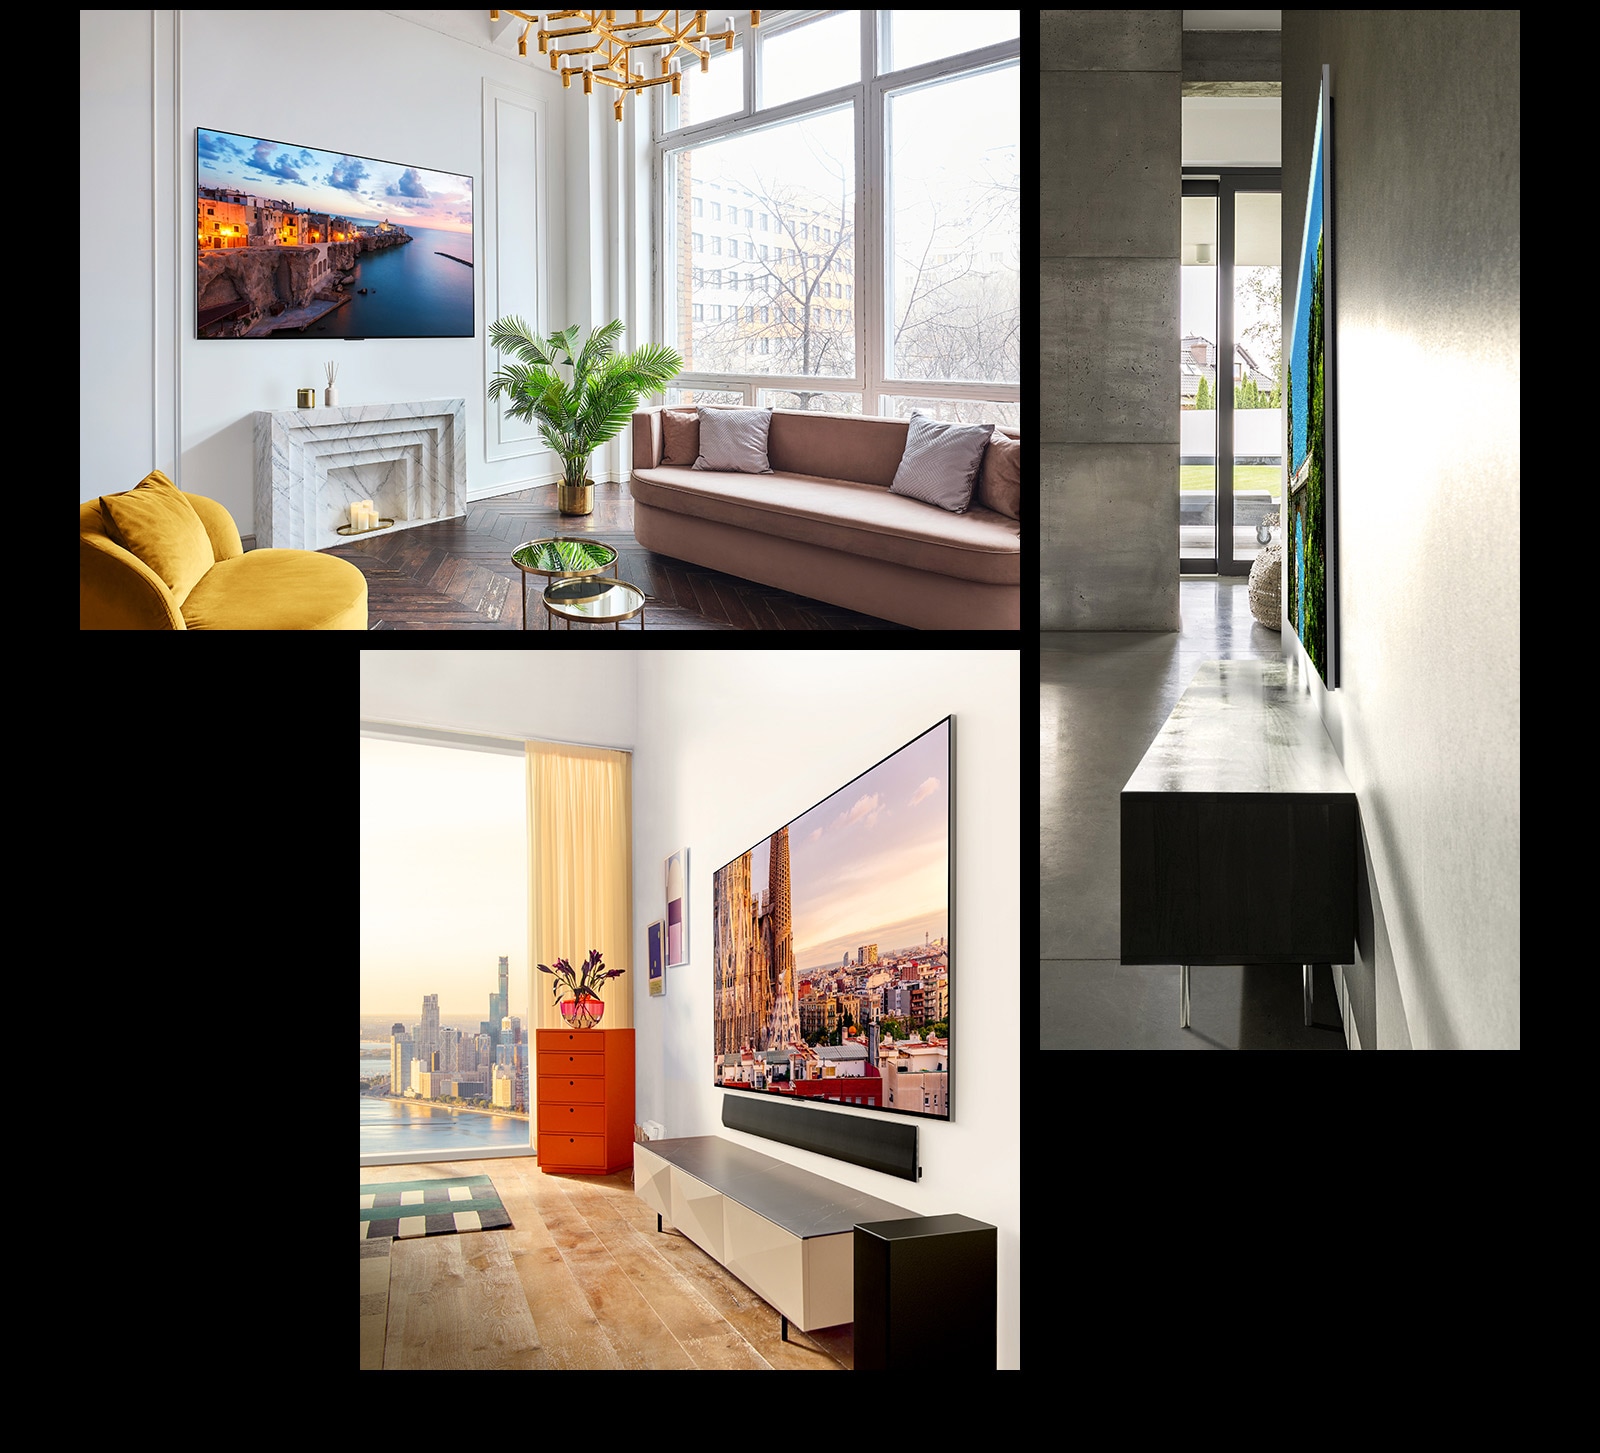 Hình ảnh của LG OLED G3 trên tường của một căn phòng trang trí công phu trưng bày Thiết kế One Wall của nó. Một góc nhìn bên về kích thước cực kỳ mỏng của LG OLED G3. Một cái nhìn góc cạnh của LG OLED G3 trên tường của một căn hộ hướng thành phố với Soundbar bên dưới.